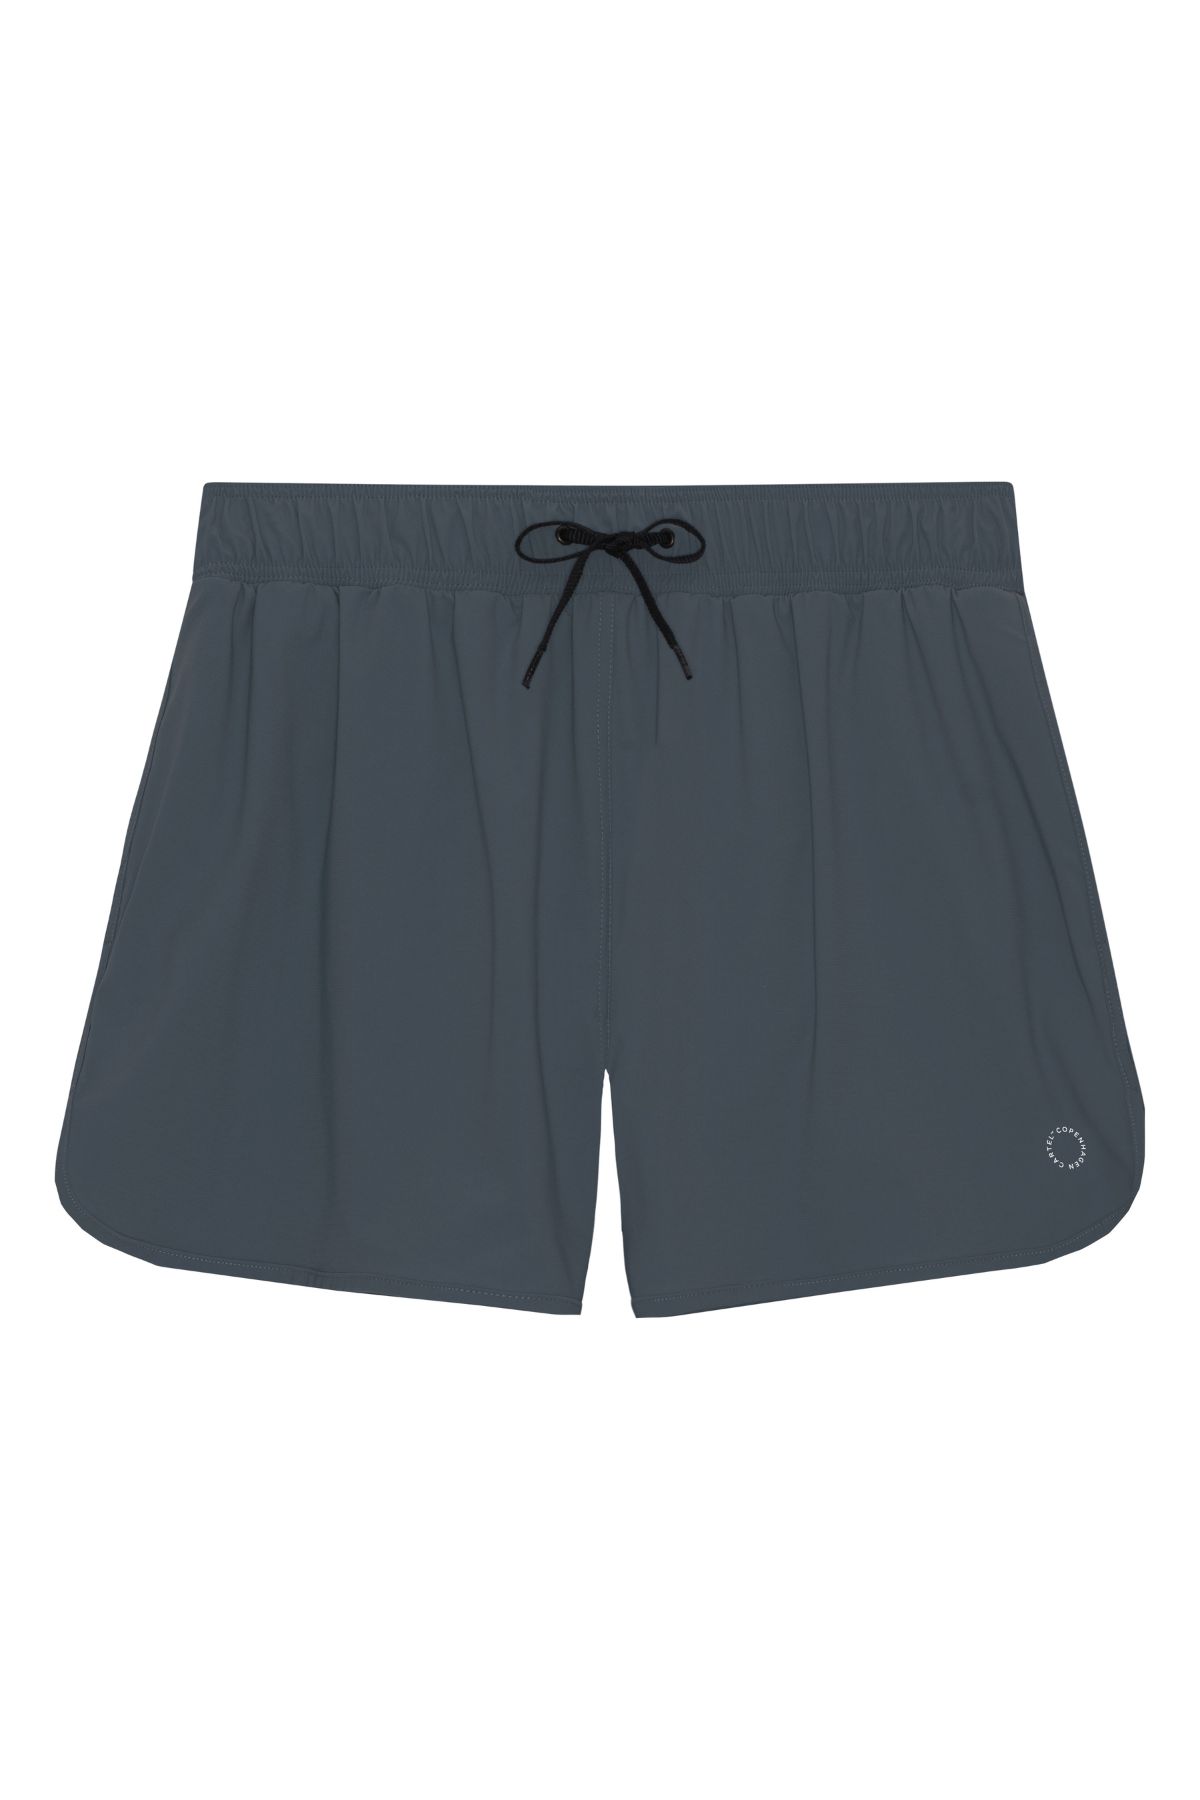 Balian men’s shorts - Ash